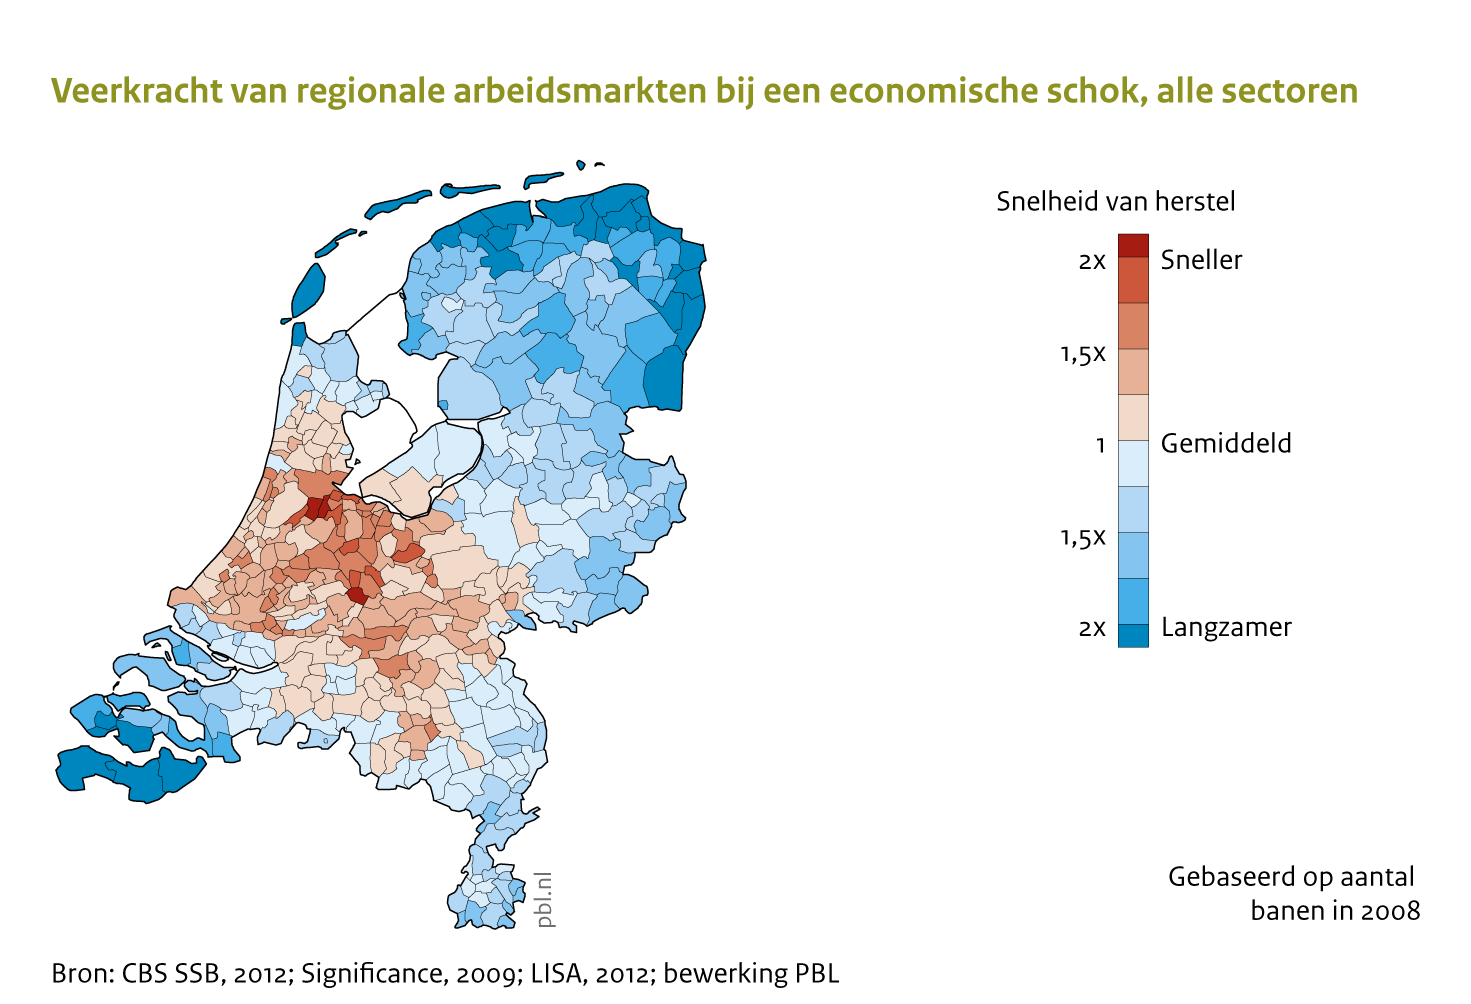 In de stedelijke gebieden in de Randstad en Noord-Brabant is de veerkracht van de regionale arbeidsmarkt het grootst.